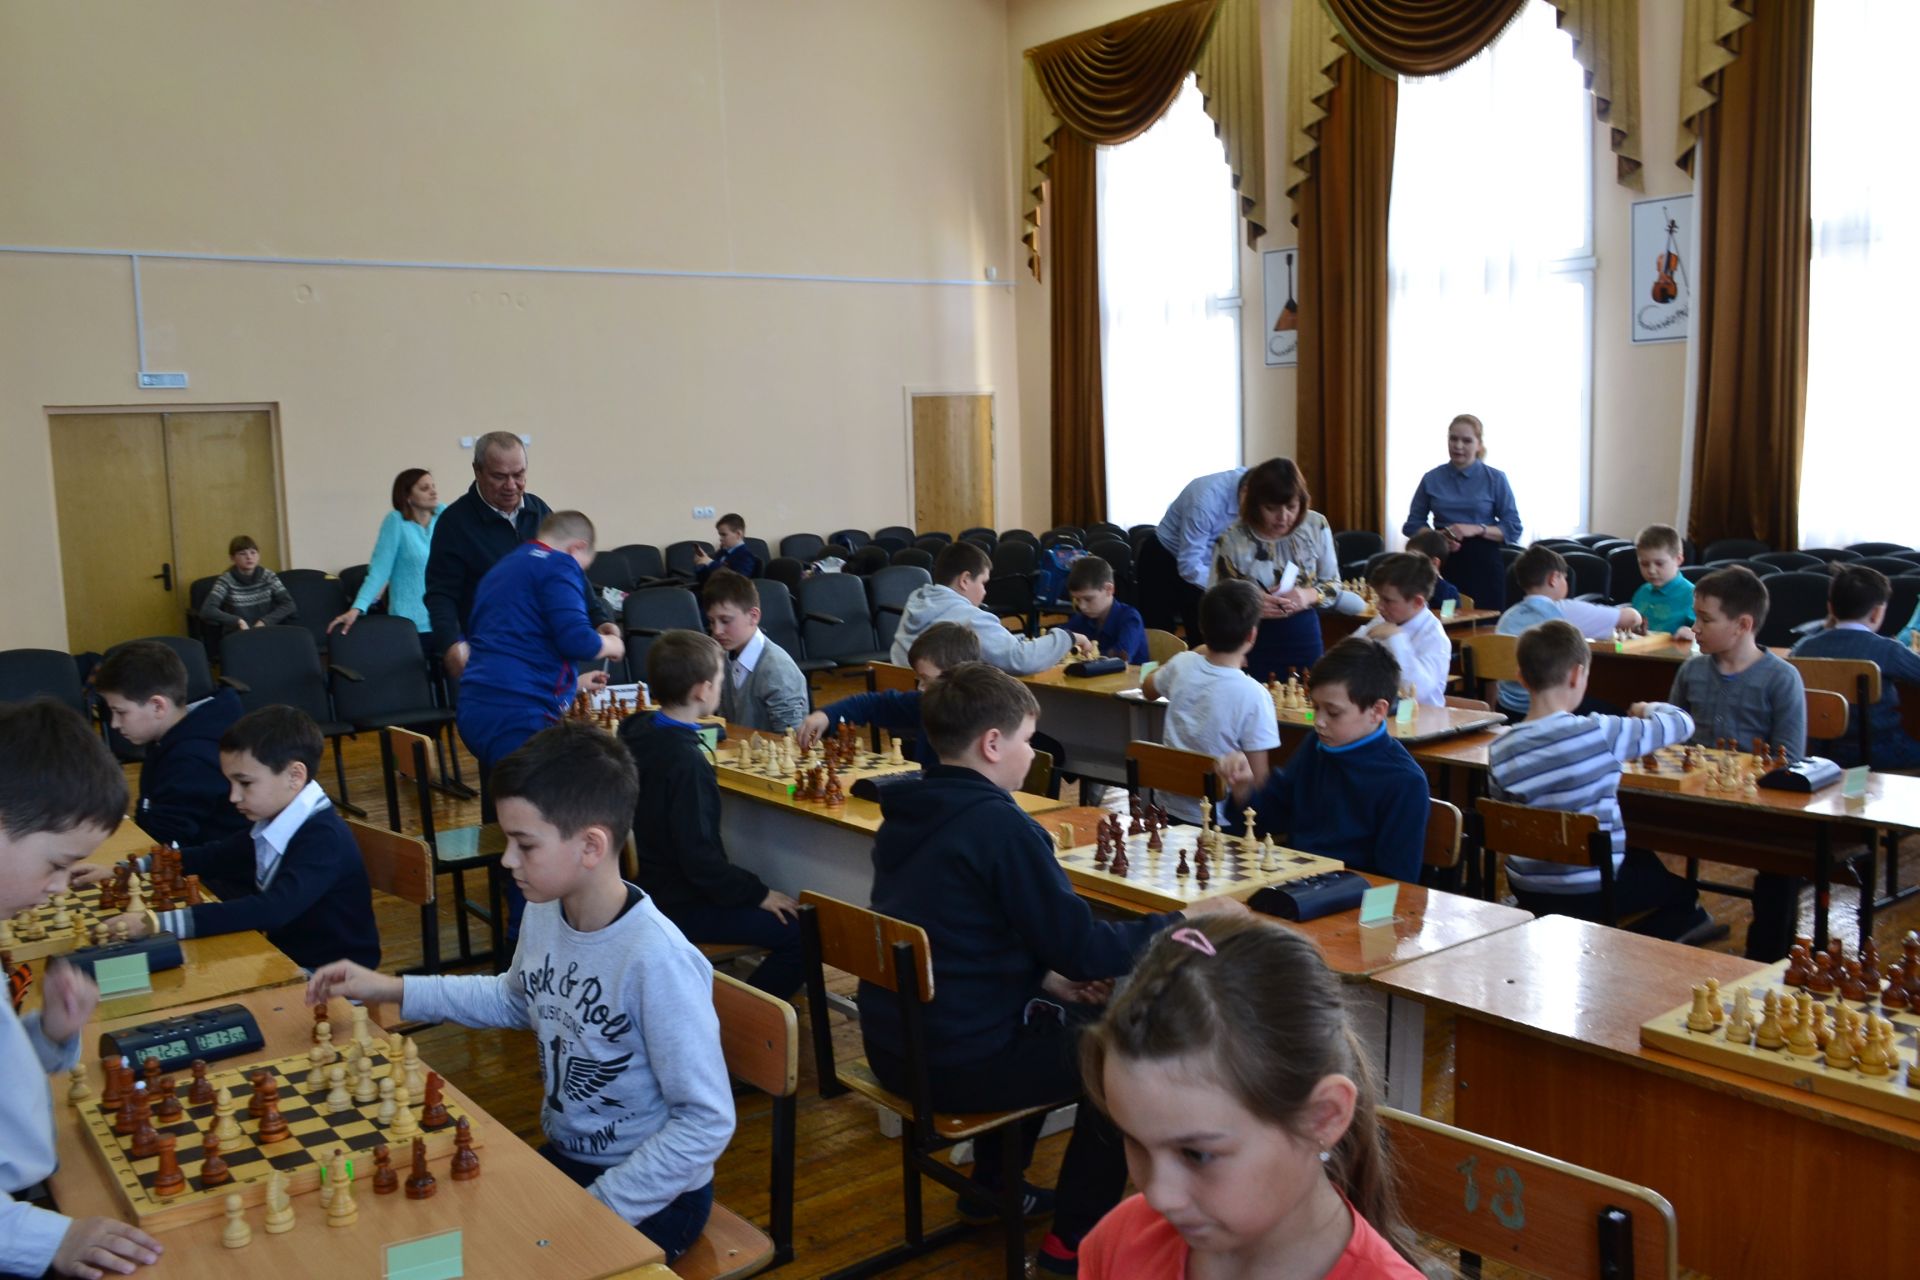 Ильфар Сафиуллин стал спонсором шахматного турнира в родной школе